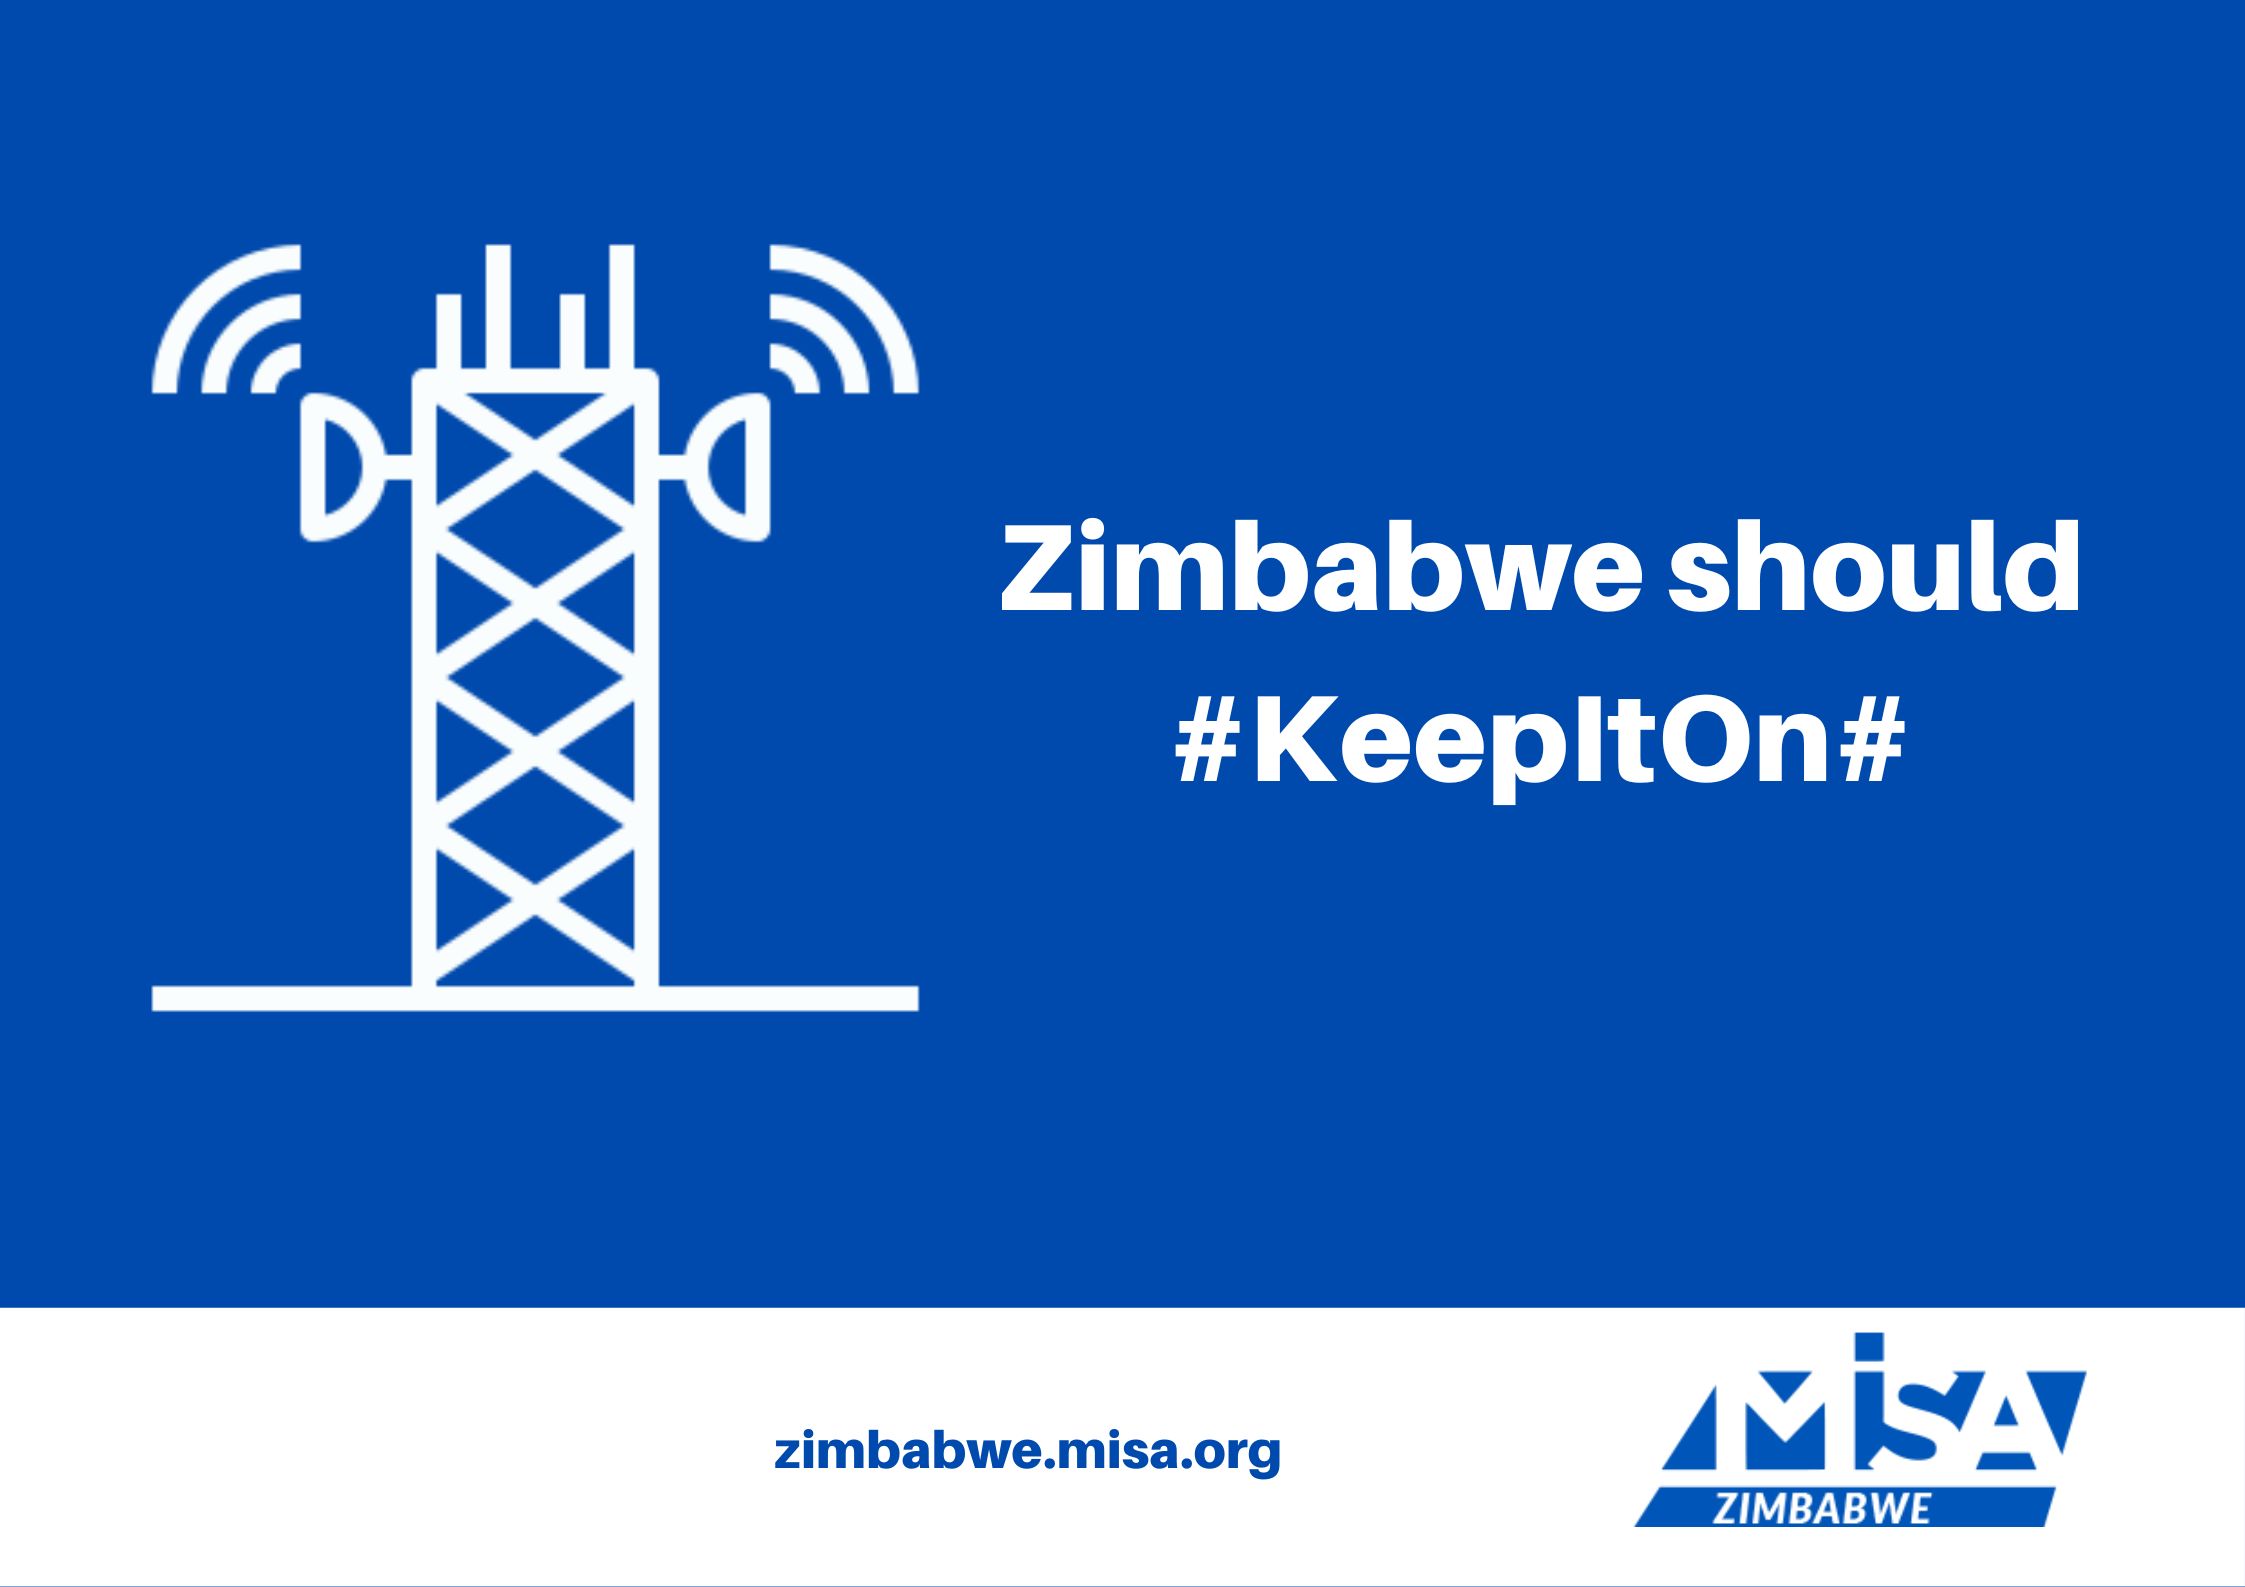 Zimbabwe should #KeepItOn#